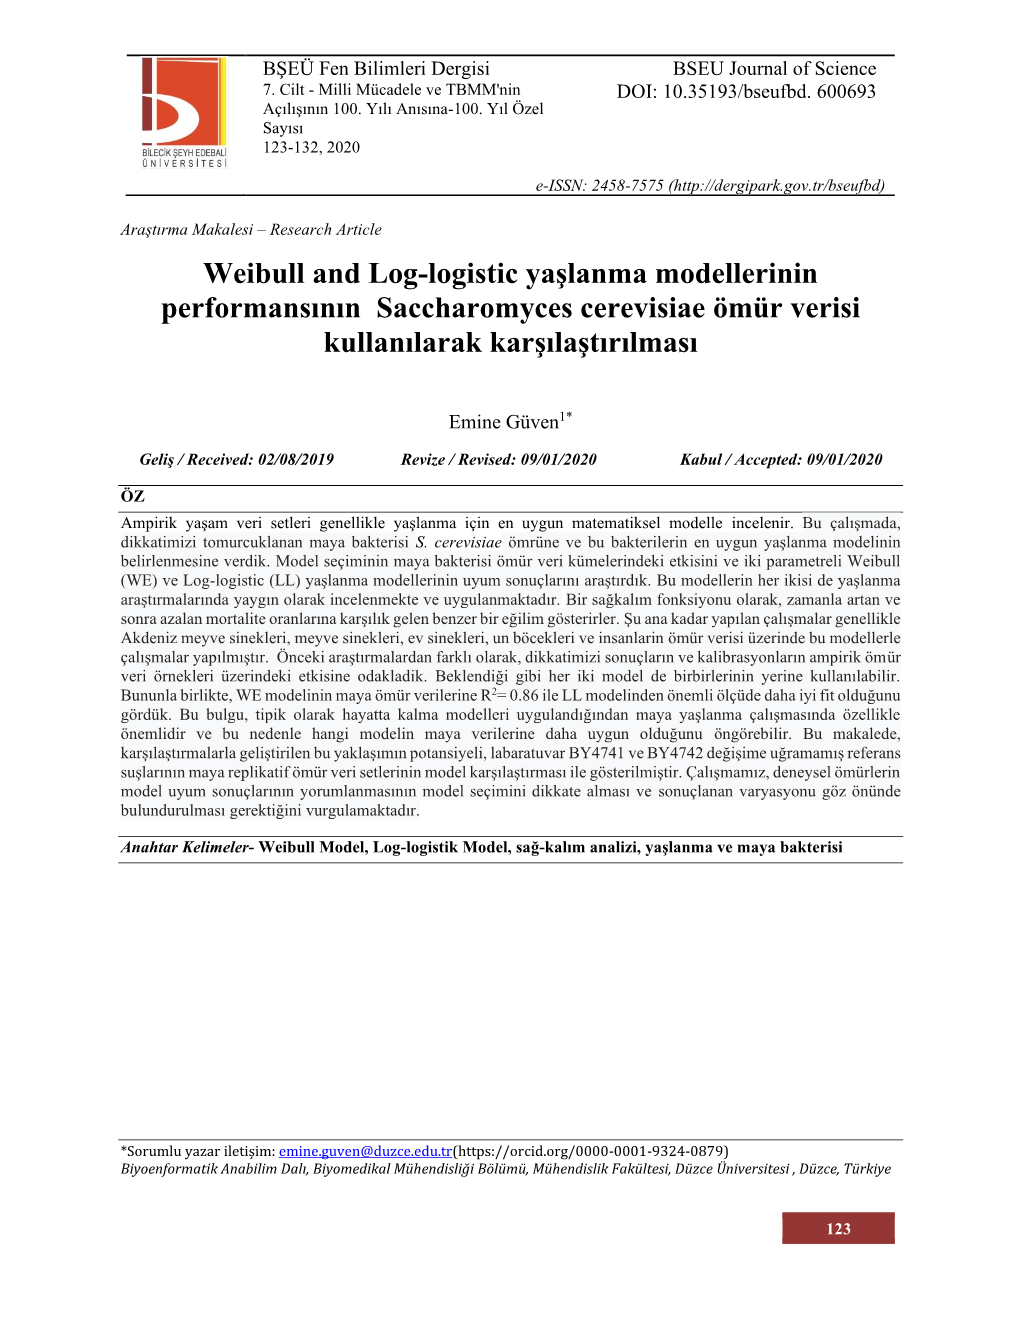 Weibull and Log-Logistic Yaşlanma Modellerinin Performansının Saccharomyces Cerevisiae Ömür Verisi Kullanılarak Karşılaştırılması